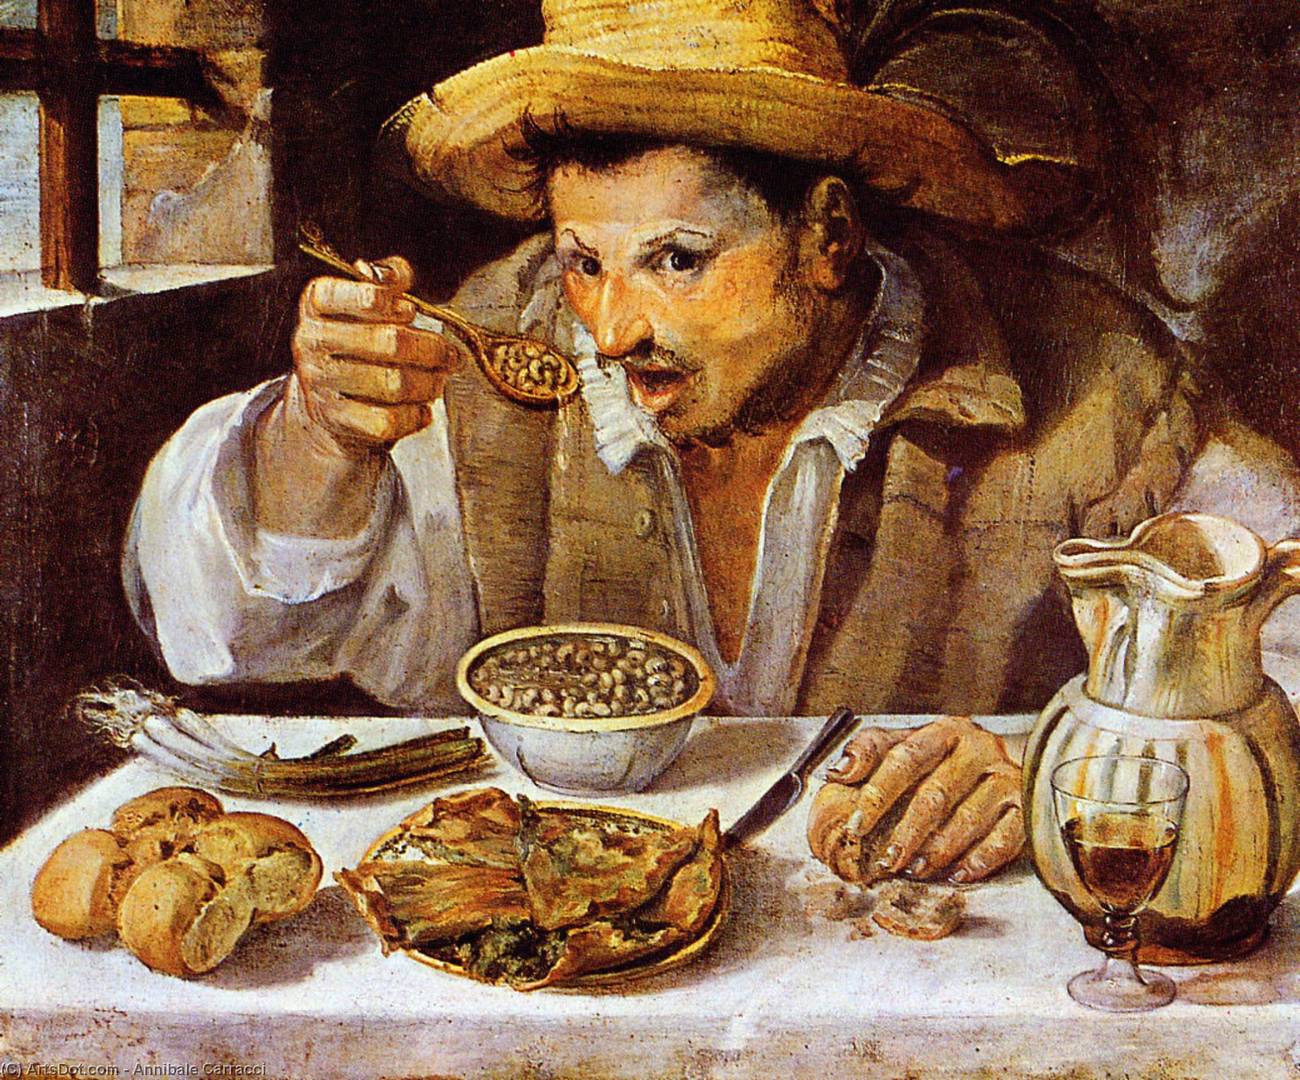 Аннибале Карраччи. Едок фасоли. 1584-1585.